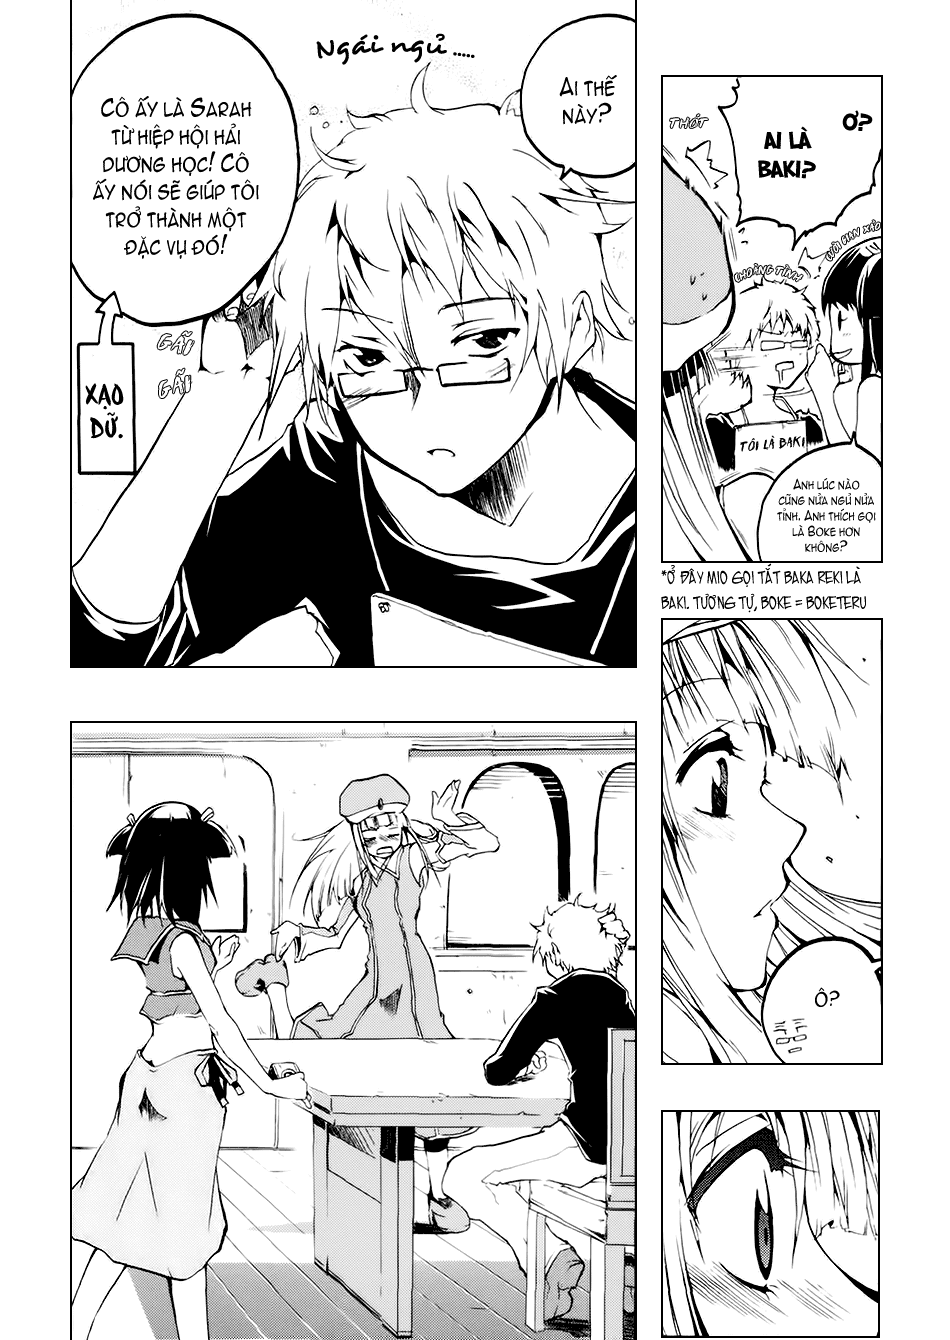 [Manga]: Esprit 0033